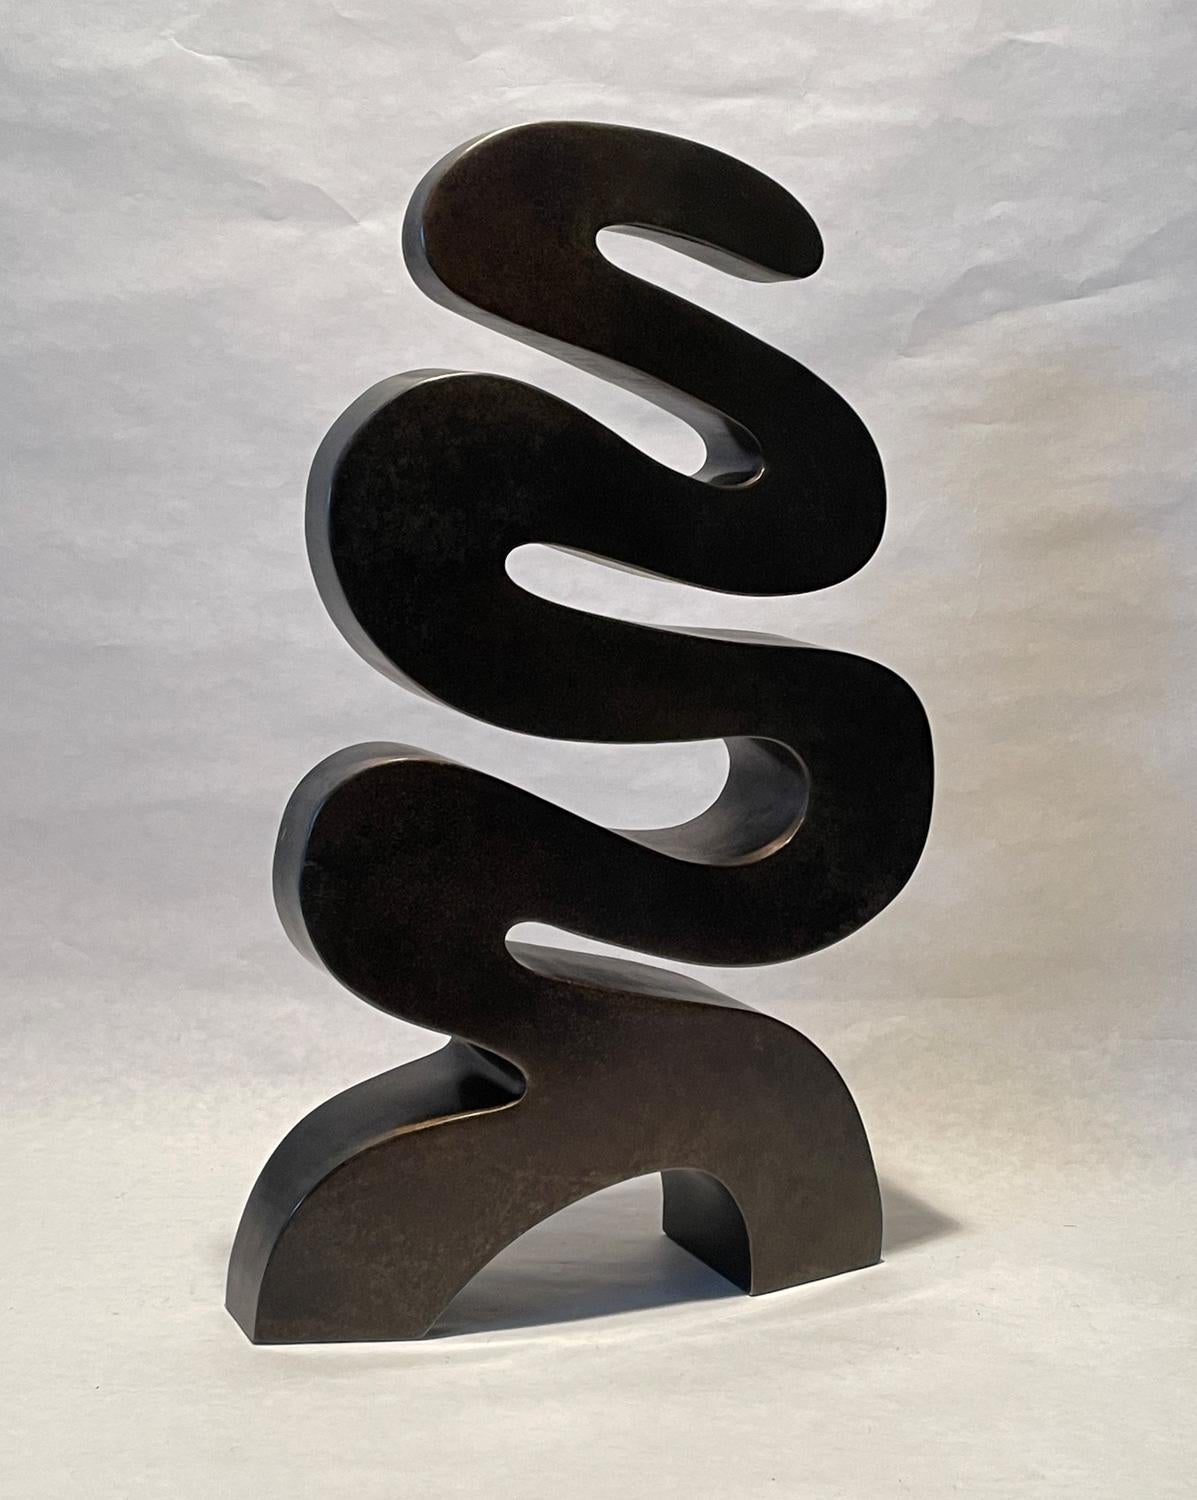 Gerard Tsutakawa Abstract Sculpture - "Molasses" unique bronze sculpture